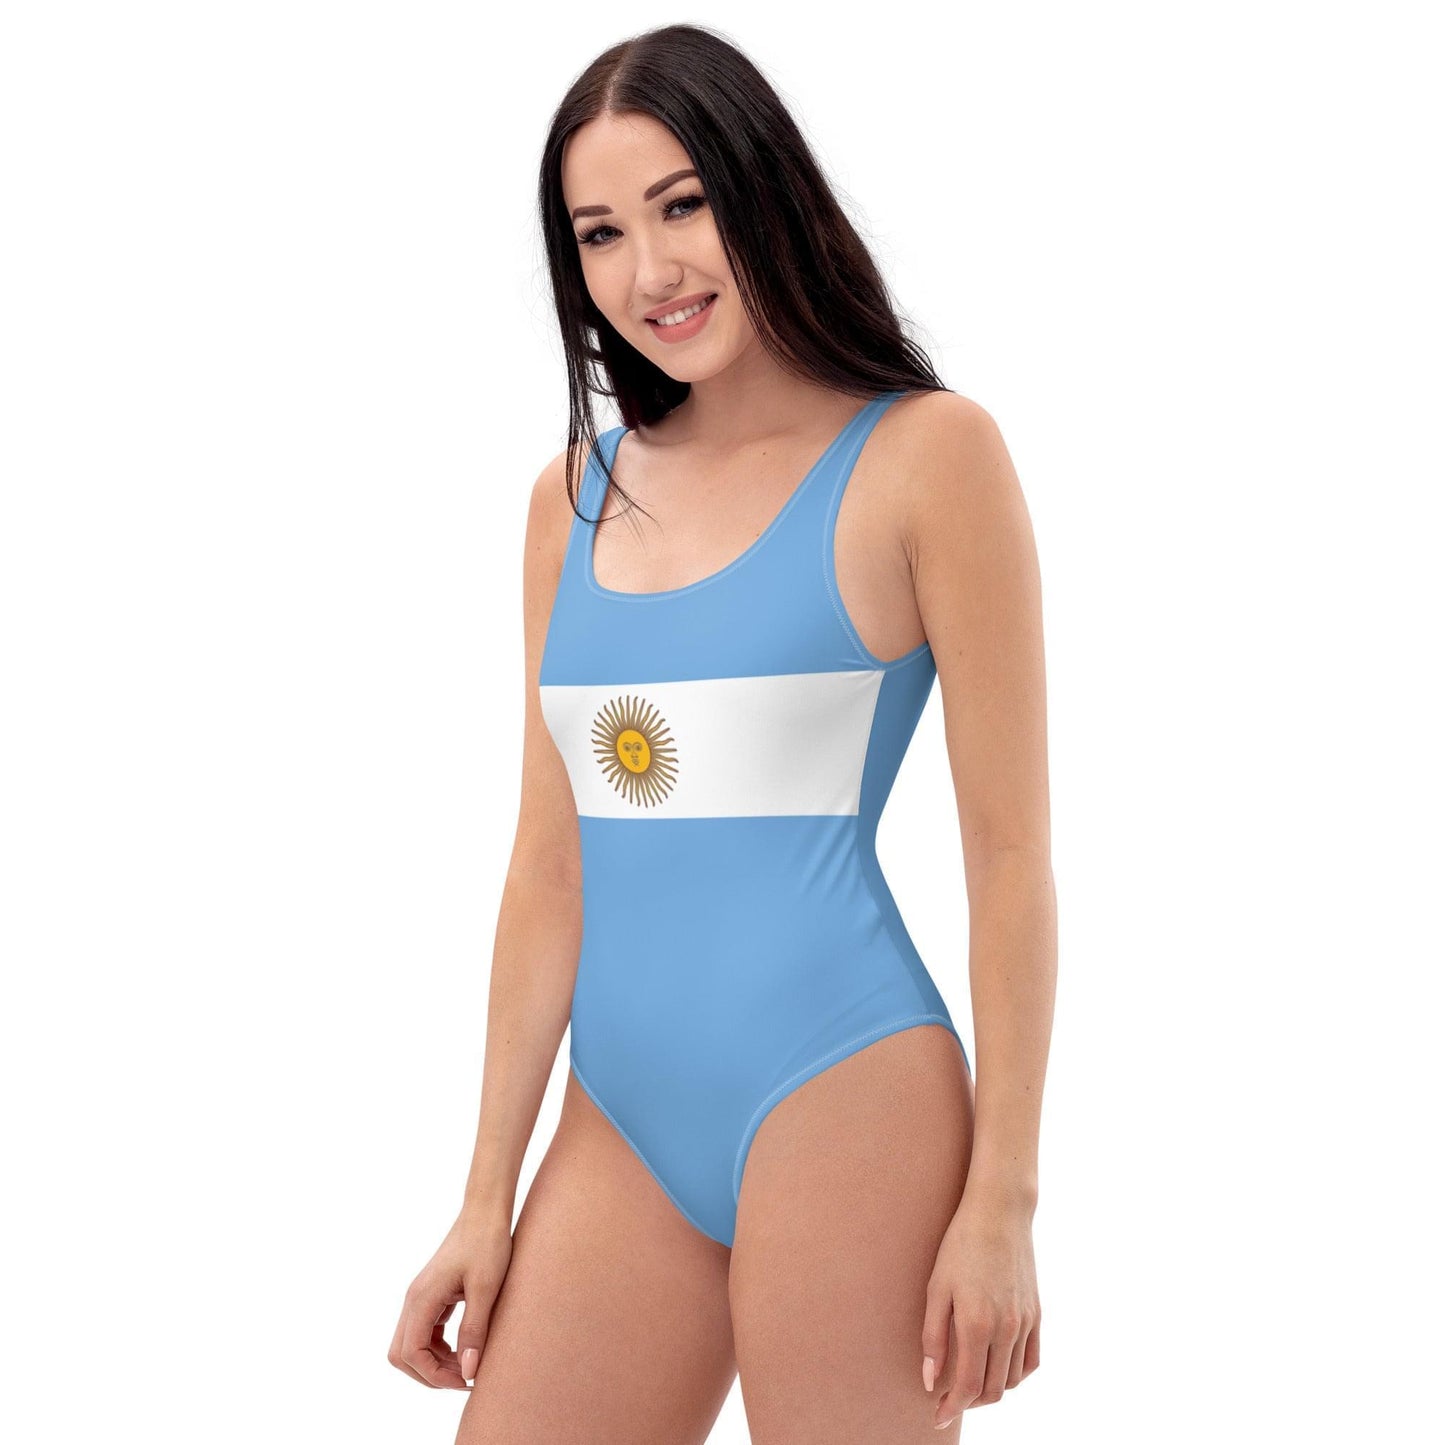 Zwemkleding met Argentijnse vlag / Zwempak uit één stuk voor patriotten